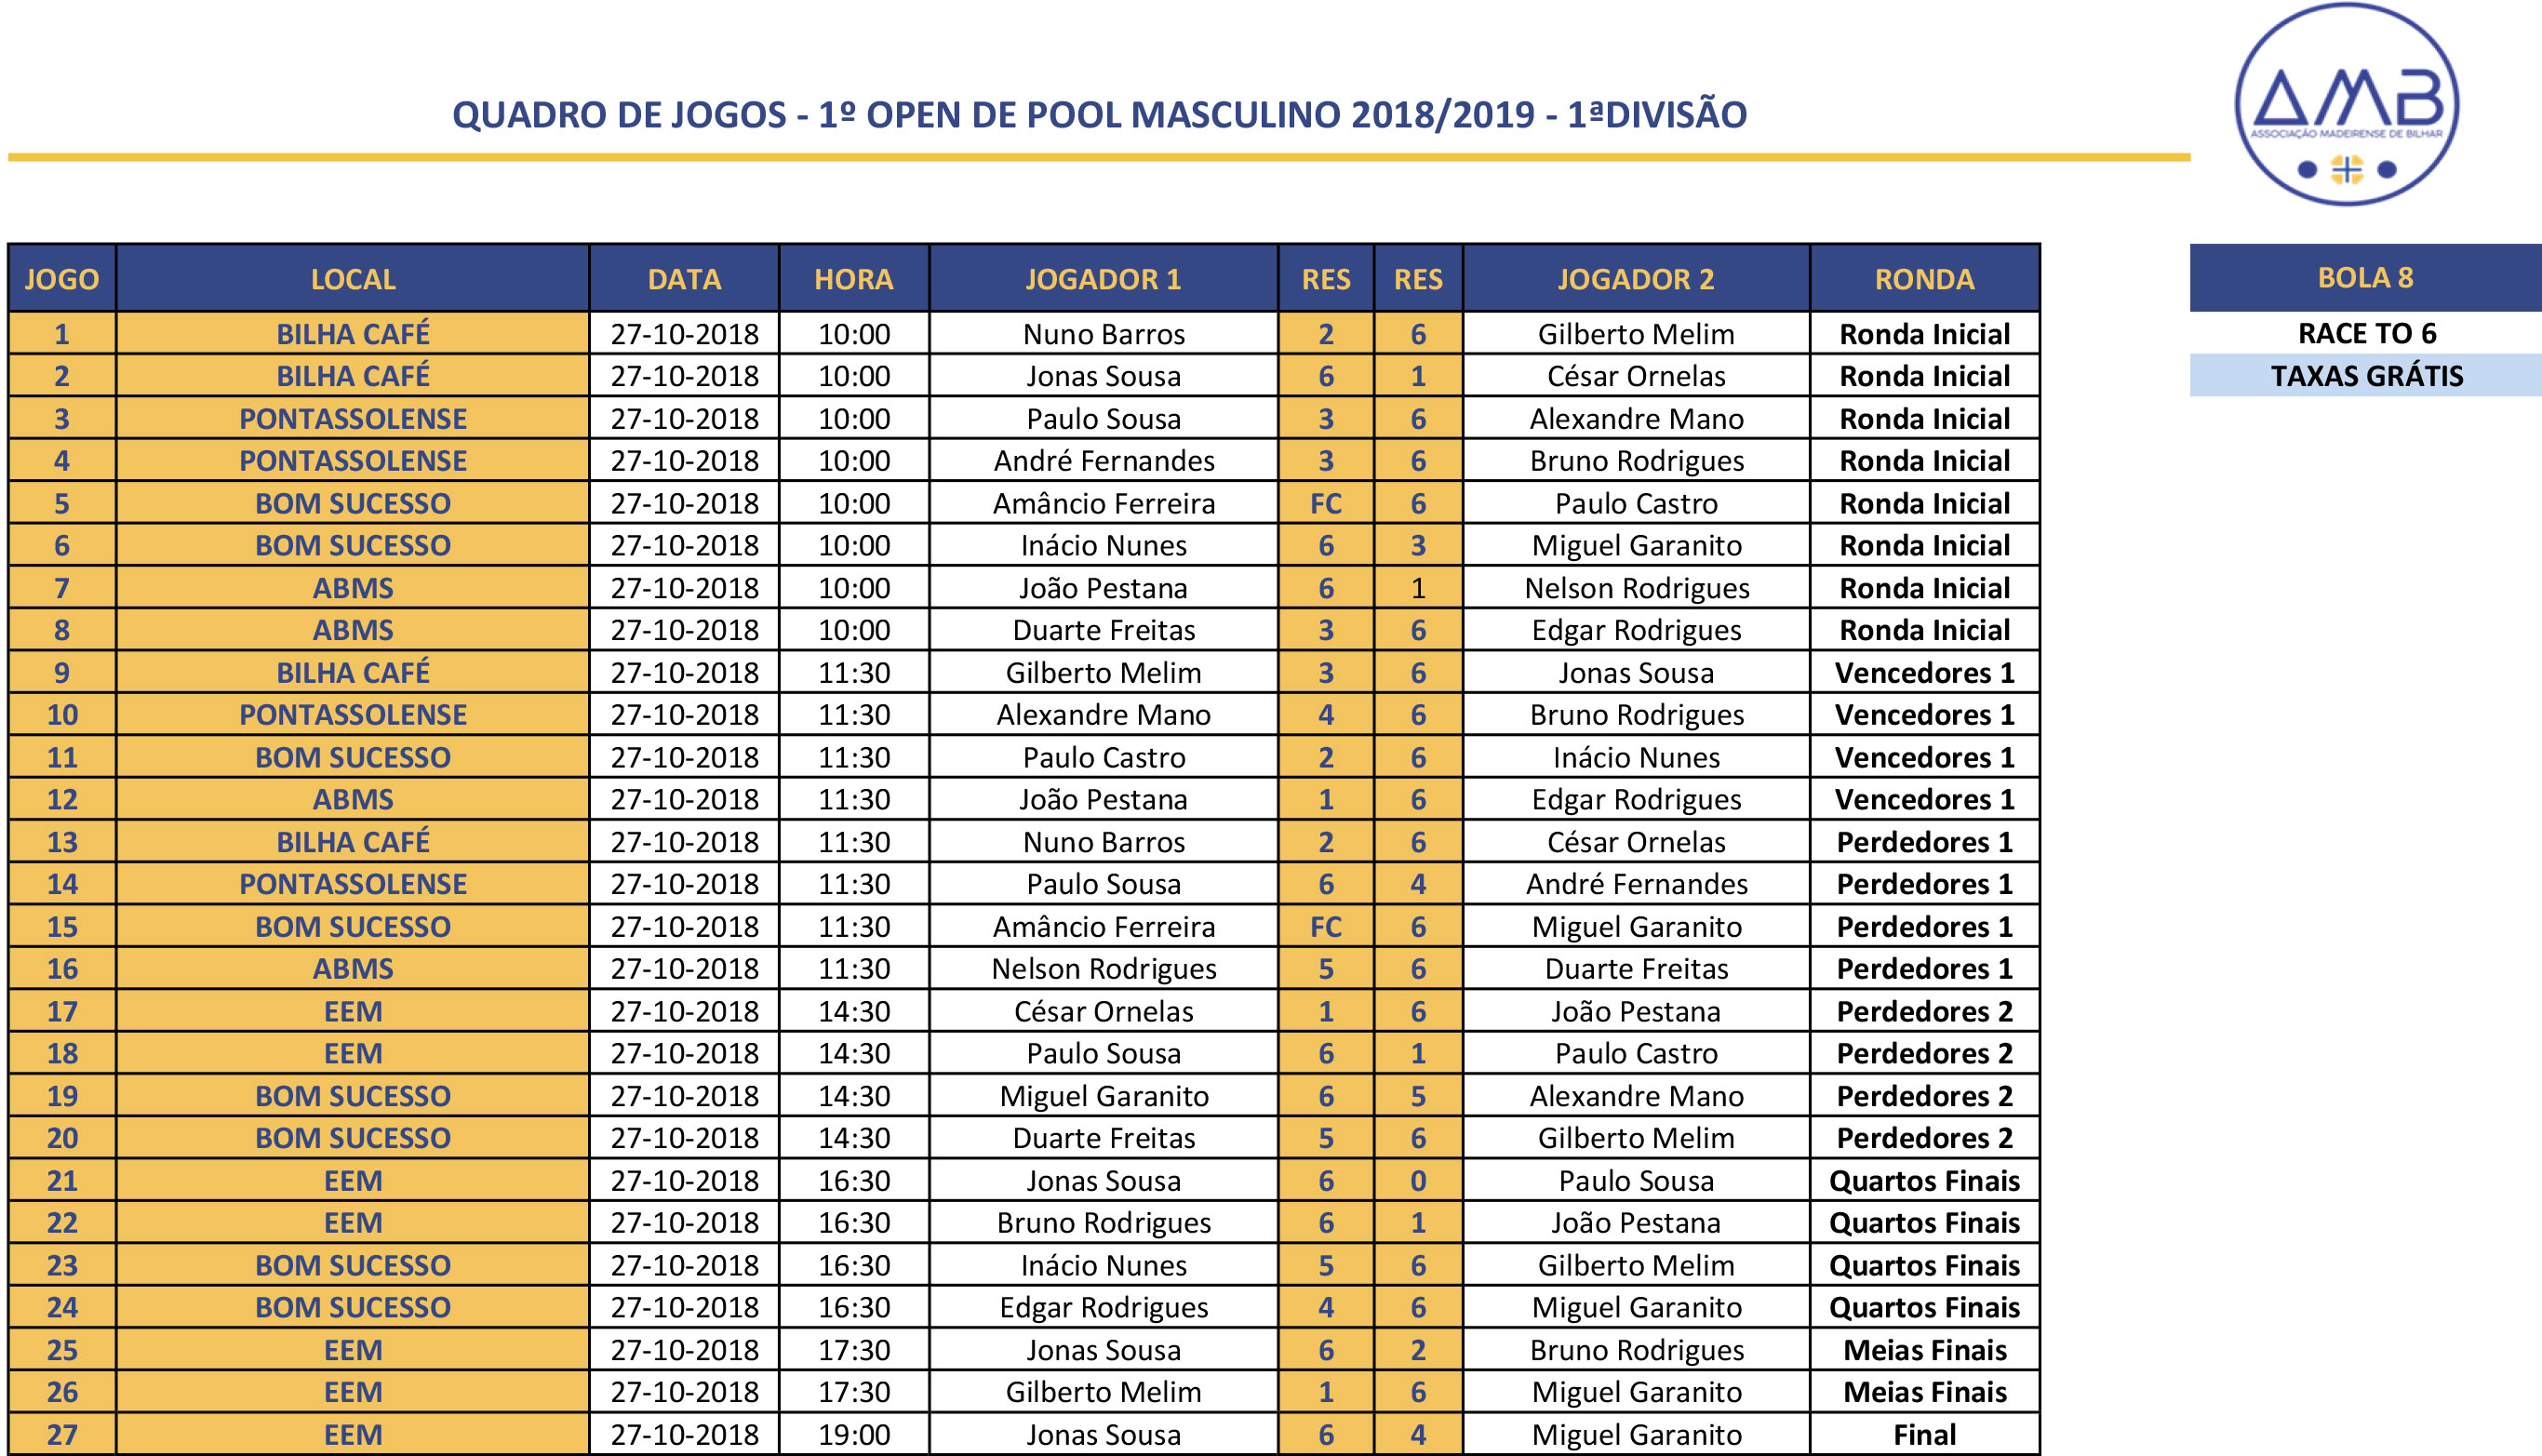 1º Open Individual de POOL MASCULINO 2017-2018 - 1ª Divisão Quadro